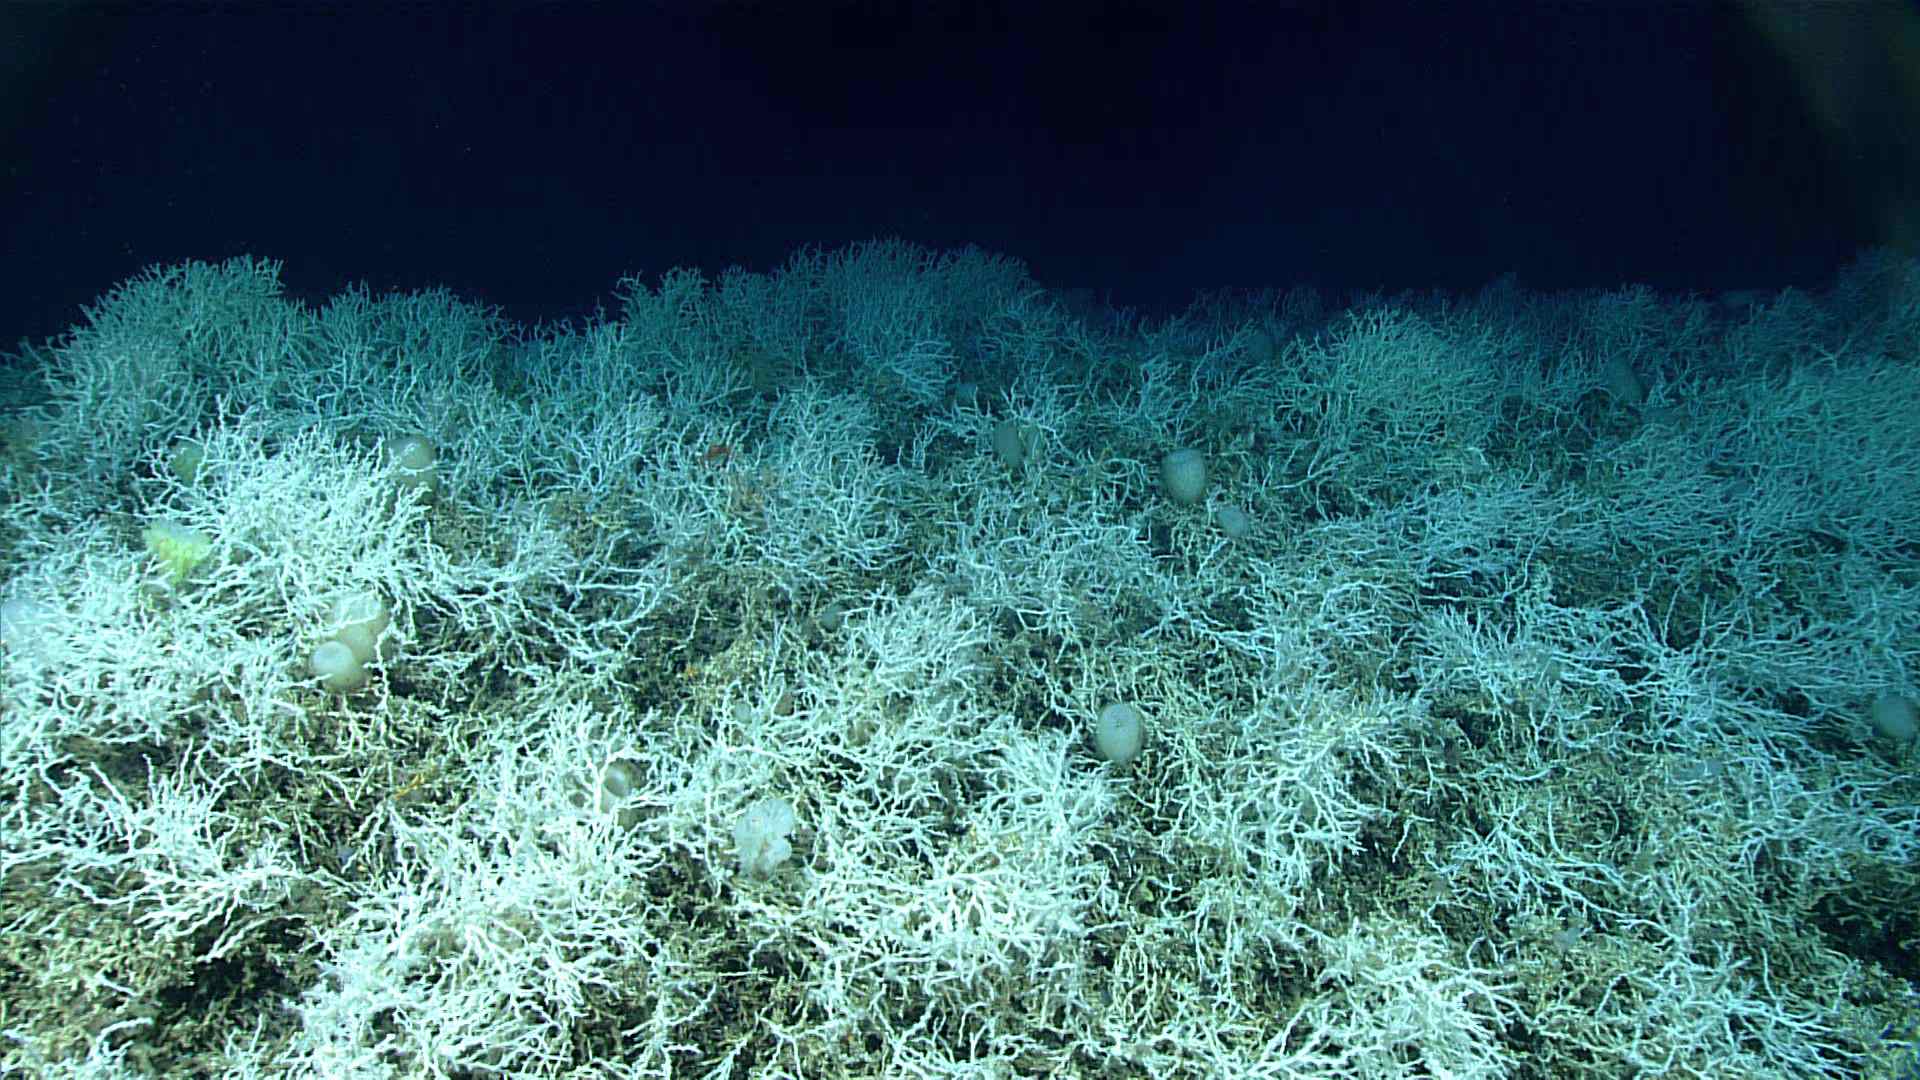 깊은 산호초는 세계에서 가장 큰 것으로 알려져 있습니다